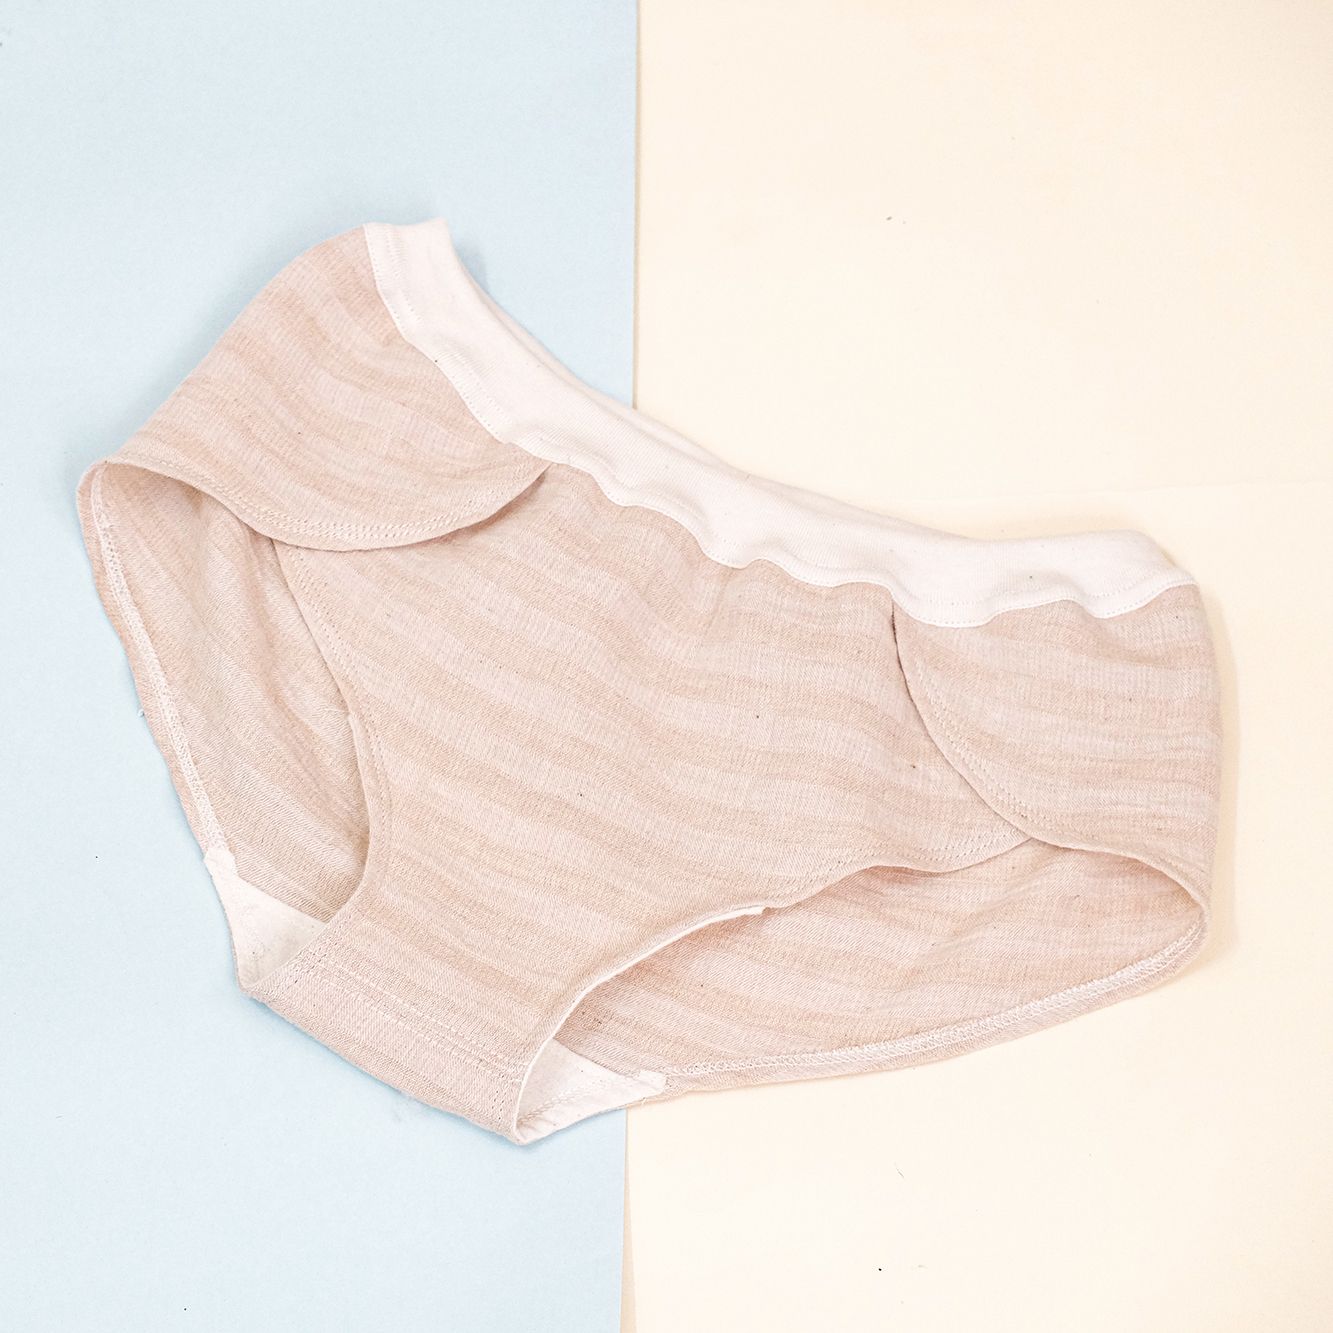  Quần lót xô | Muslin underwear | CHOI SEWING 